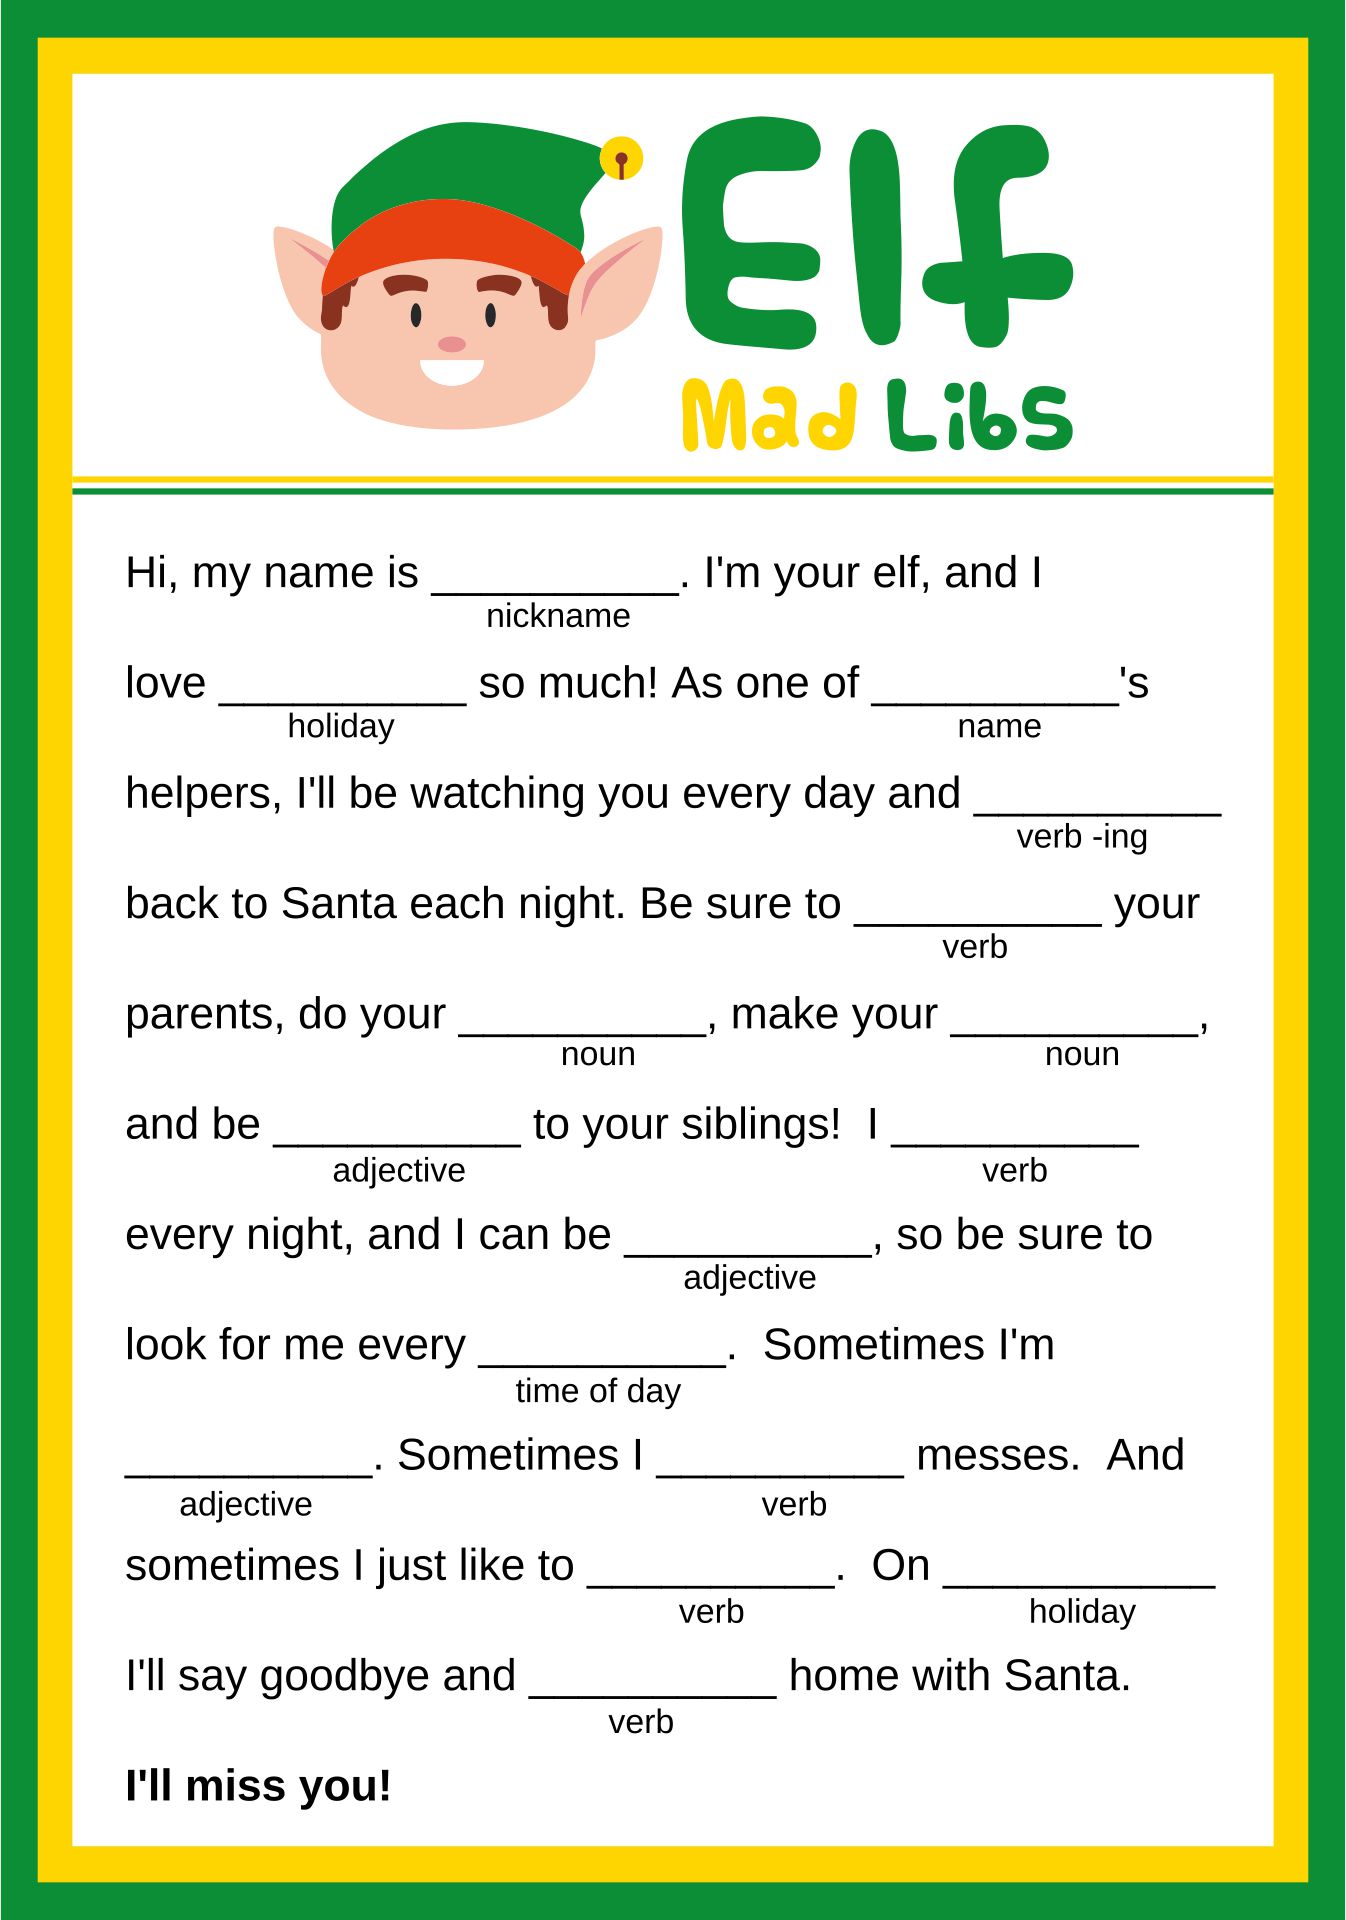 Buddy The Elf Mad Libs Christmas Game Printable